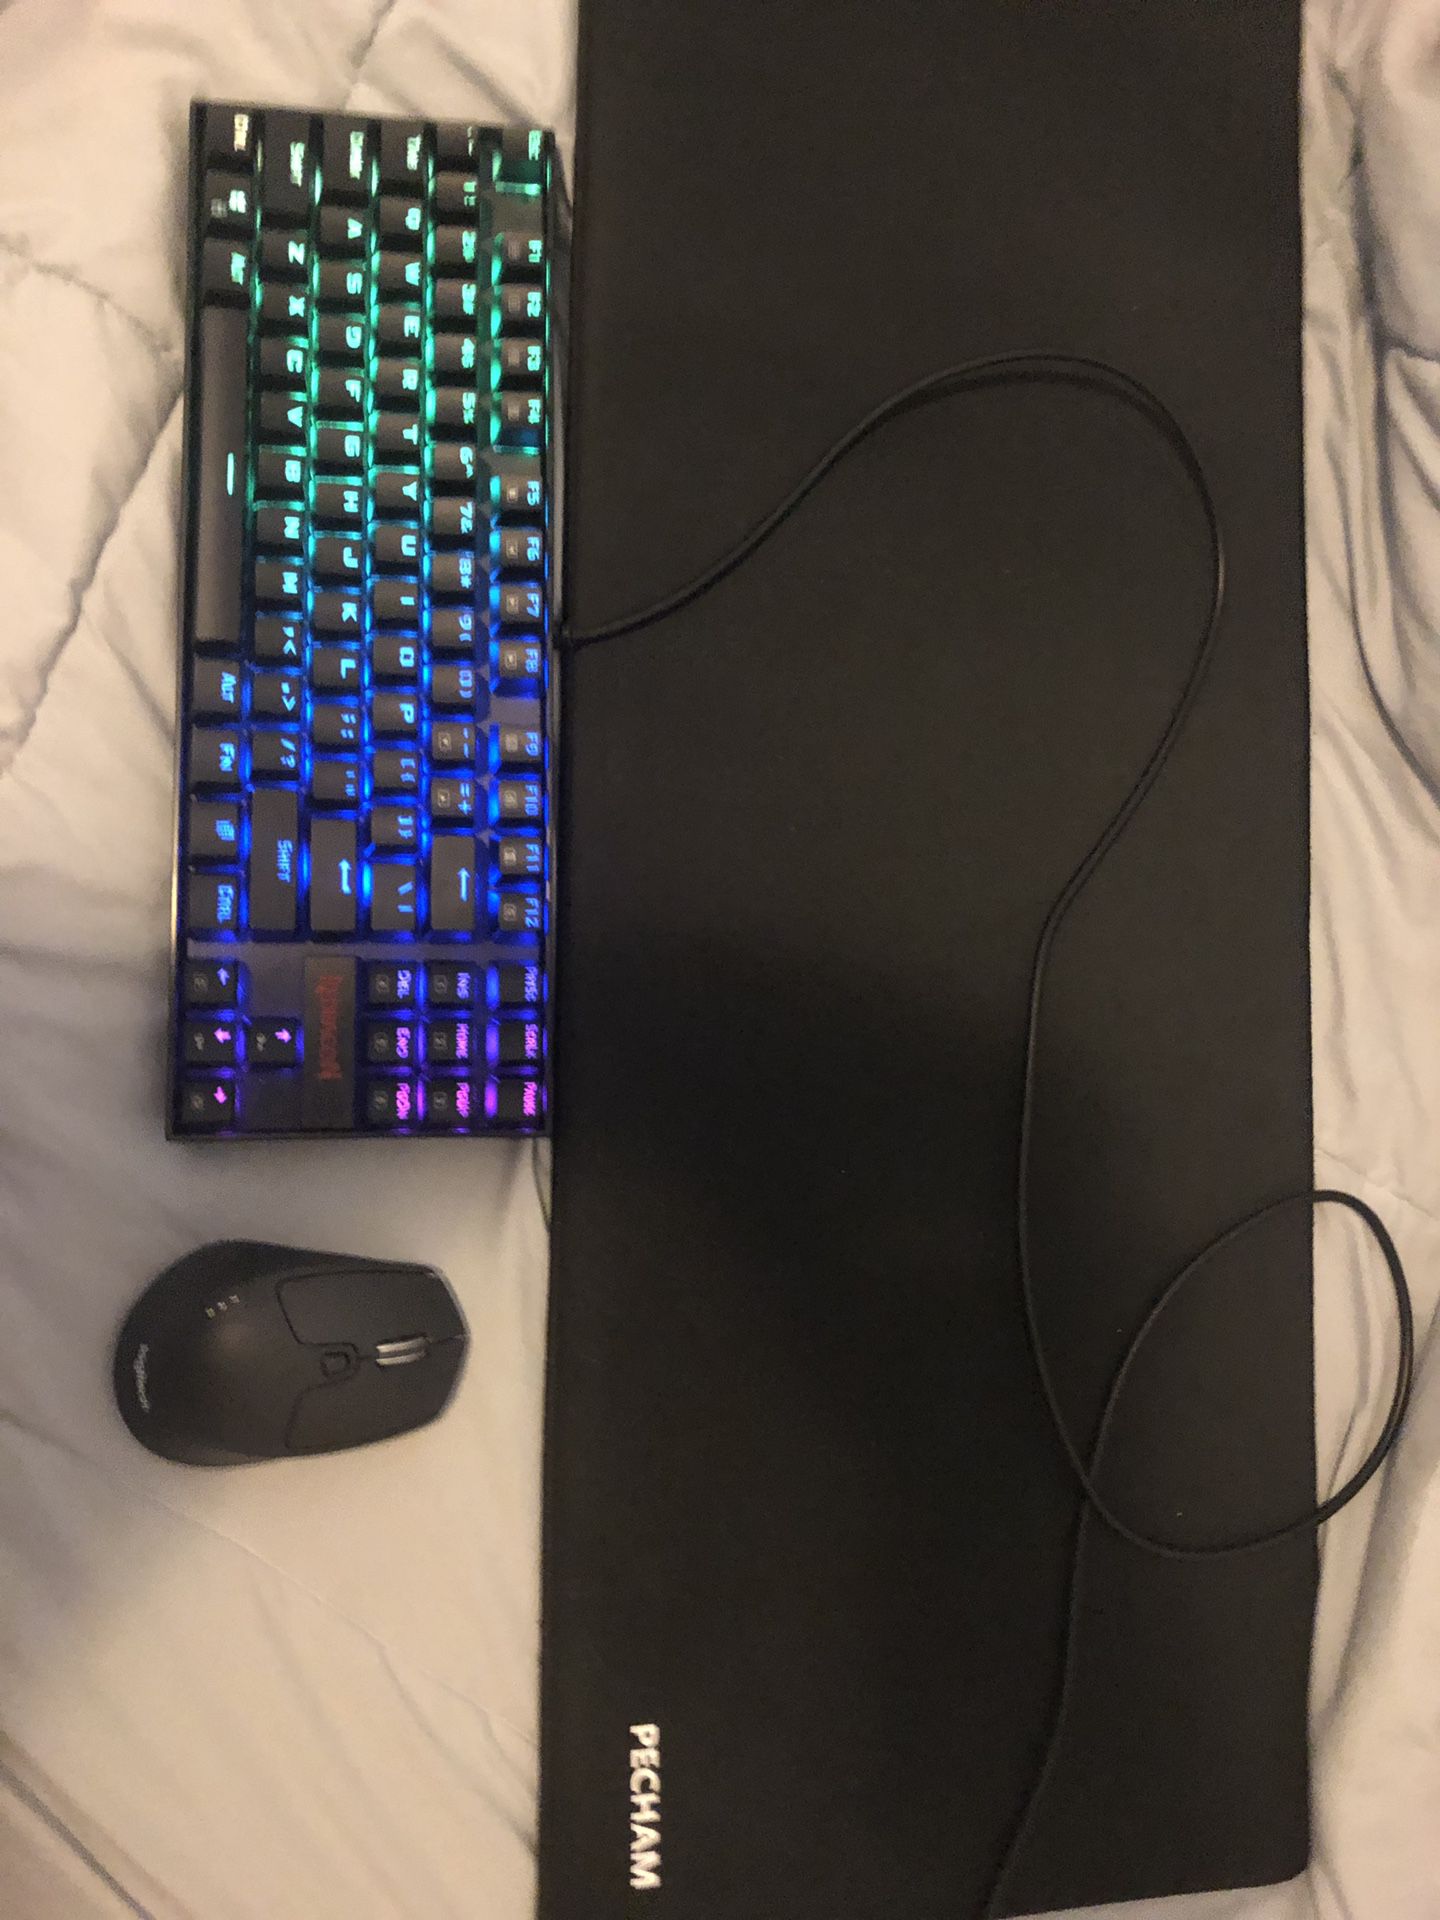 Logitech Mouse, RGB Keyboard, XXL Mousepad